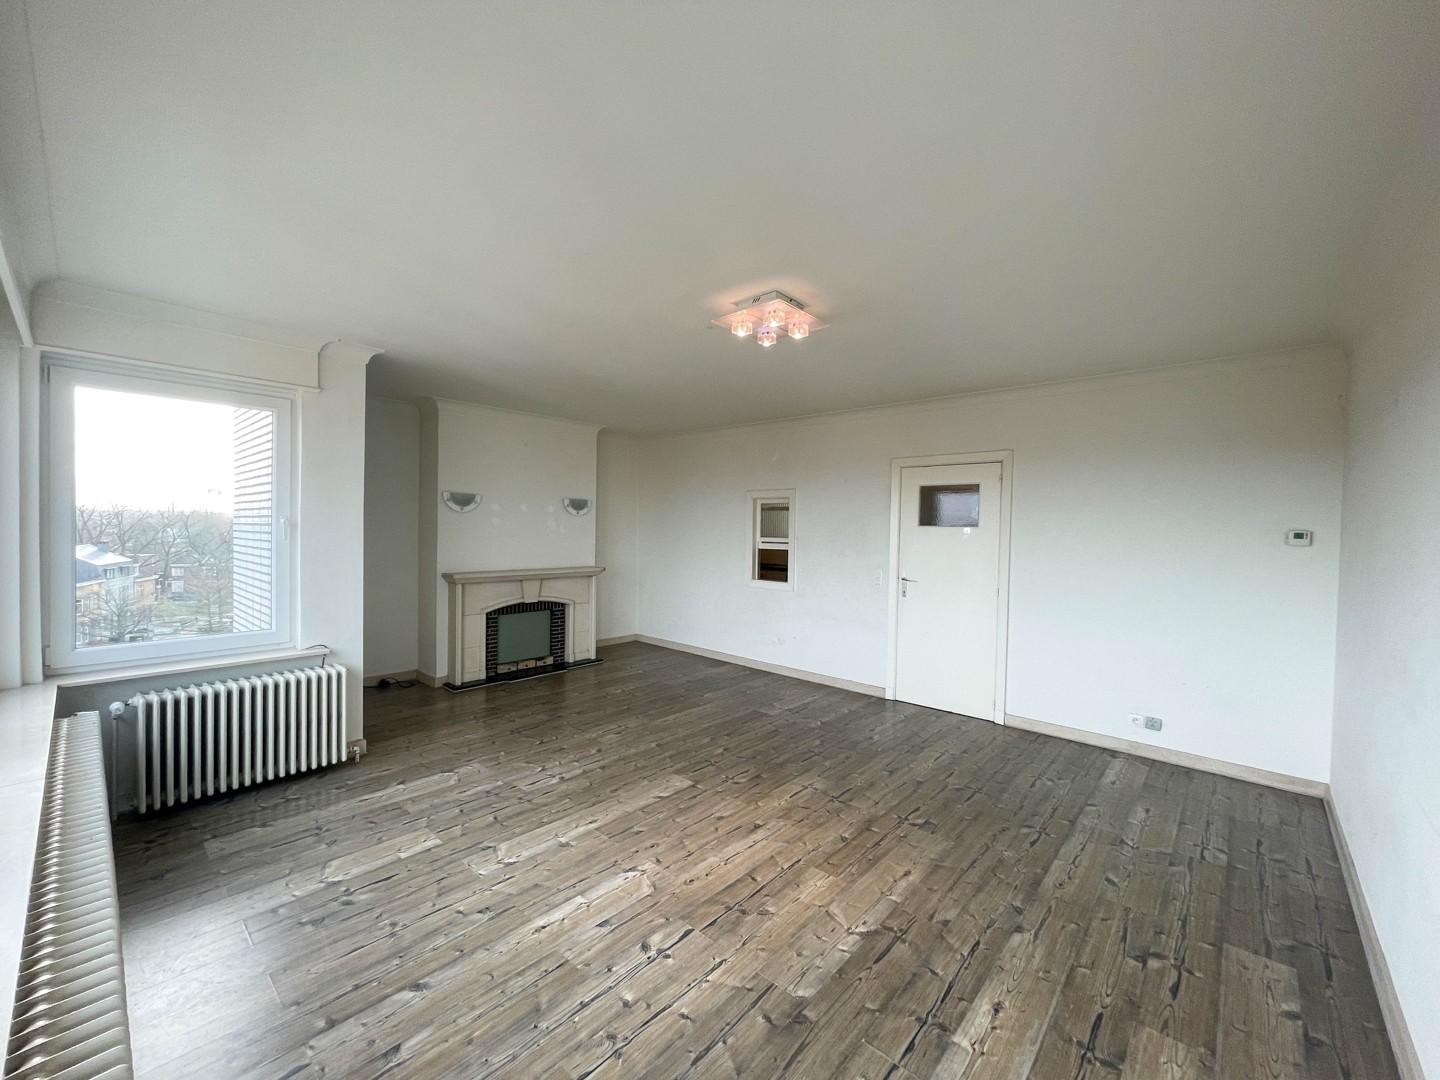 Instapklaar appartement met twee slaapkamers vlakbij Kortrijk centrum!